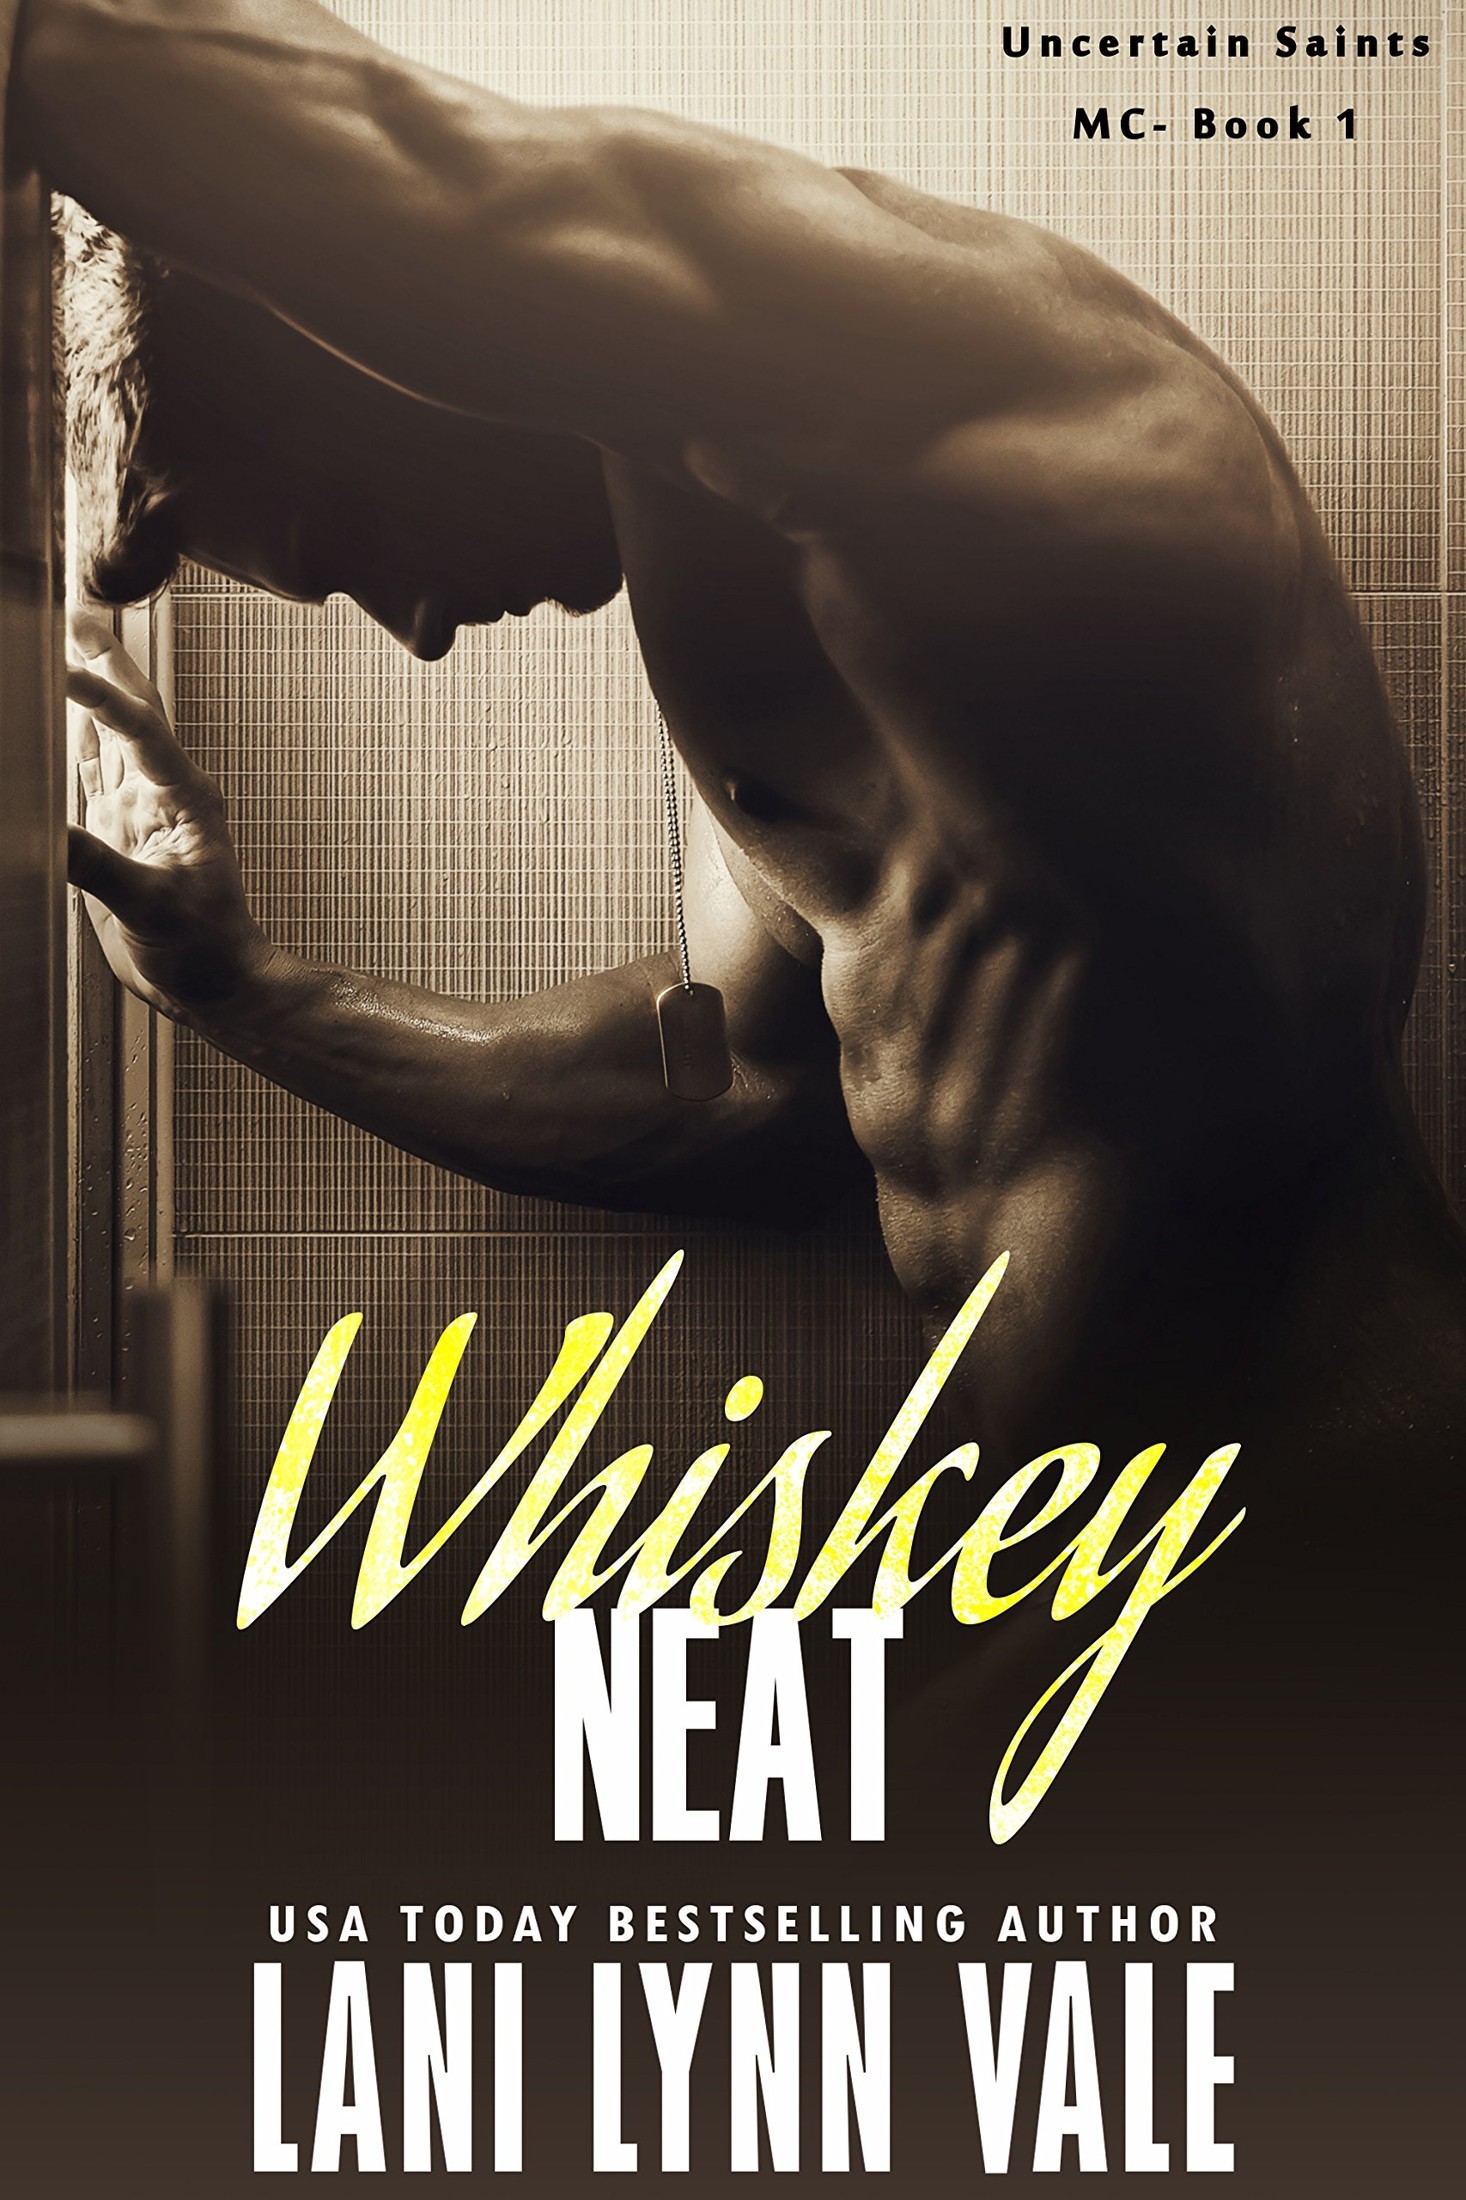 Whiskey Neat (The Uncertain Saints MC Book 1)